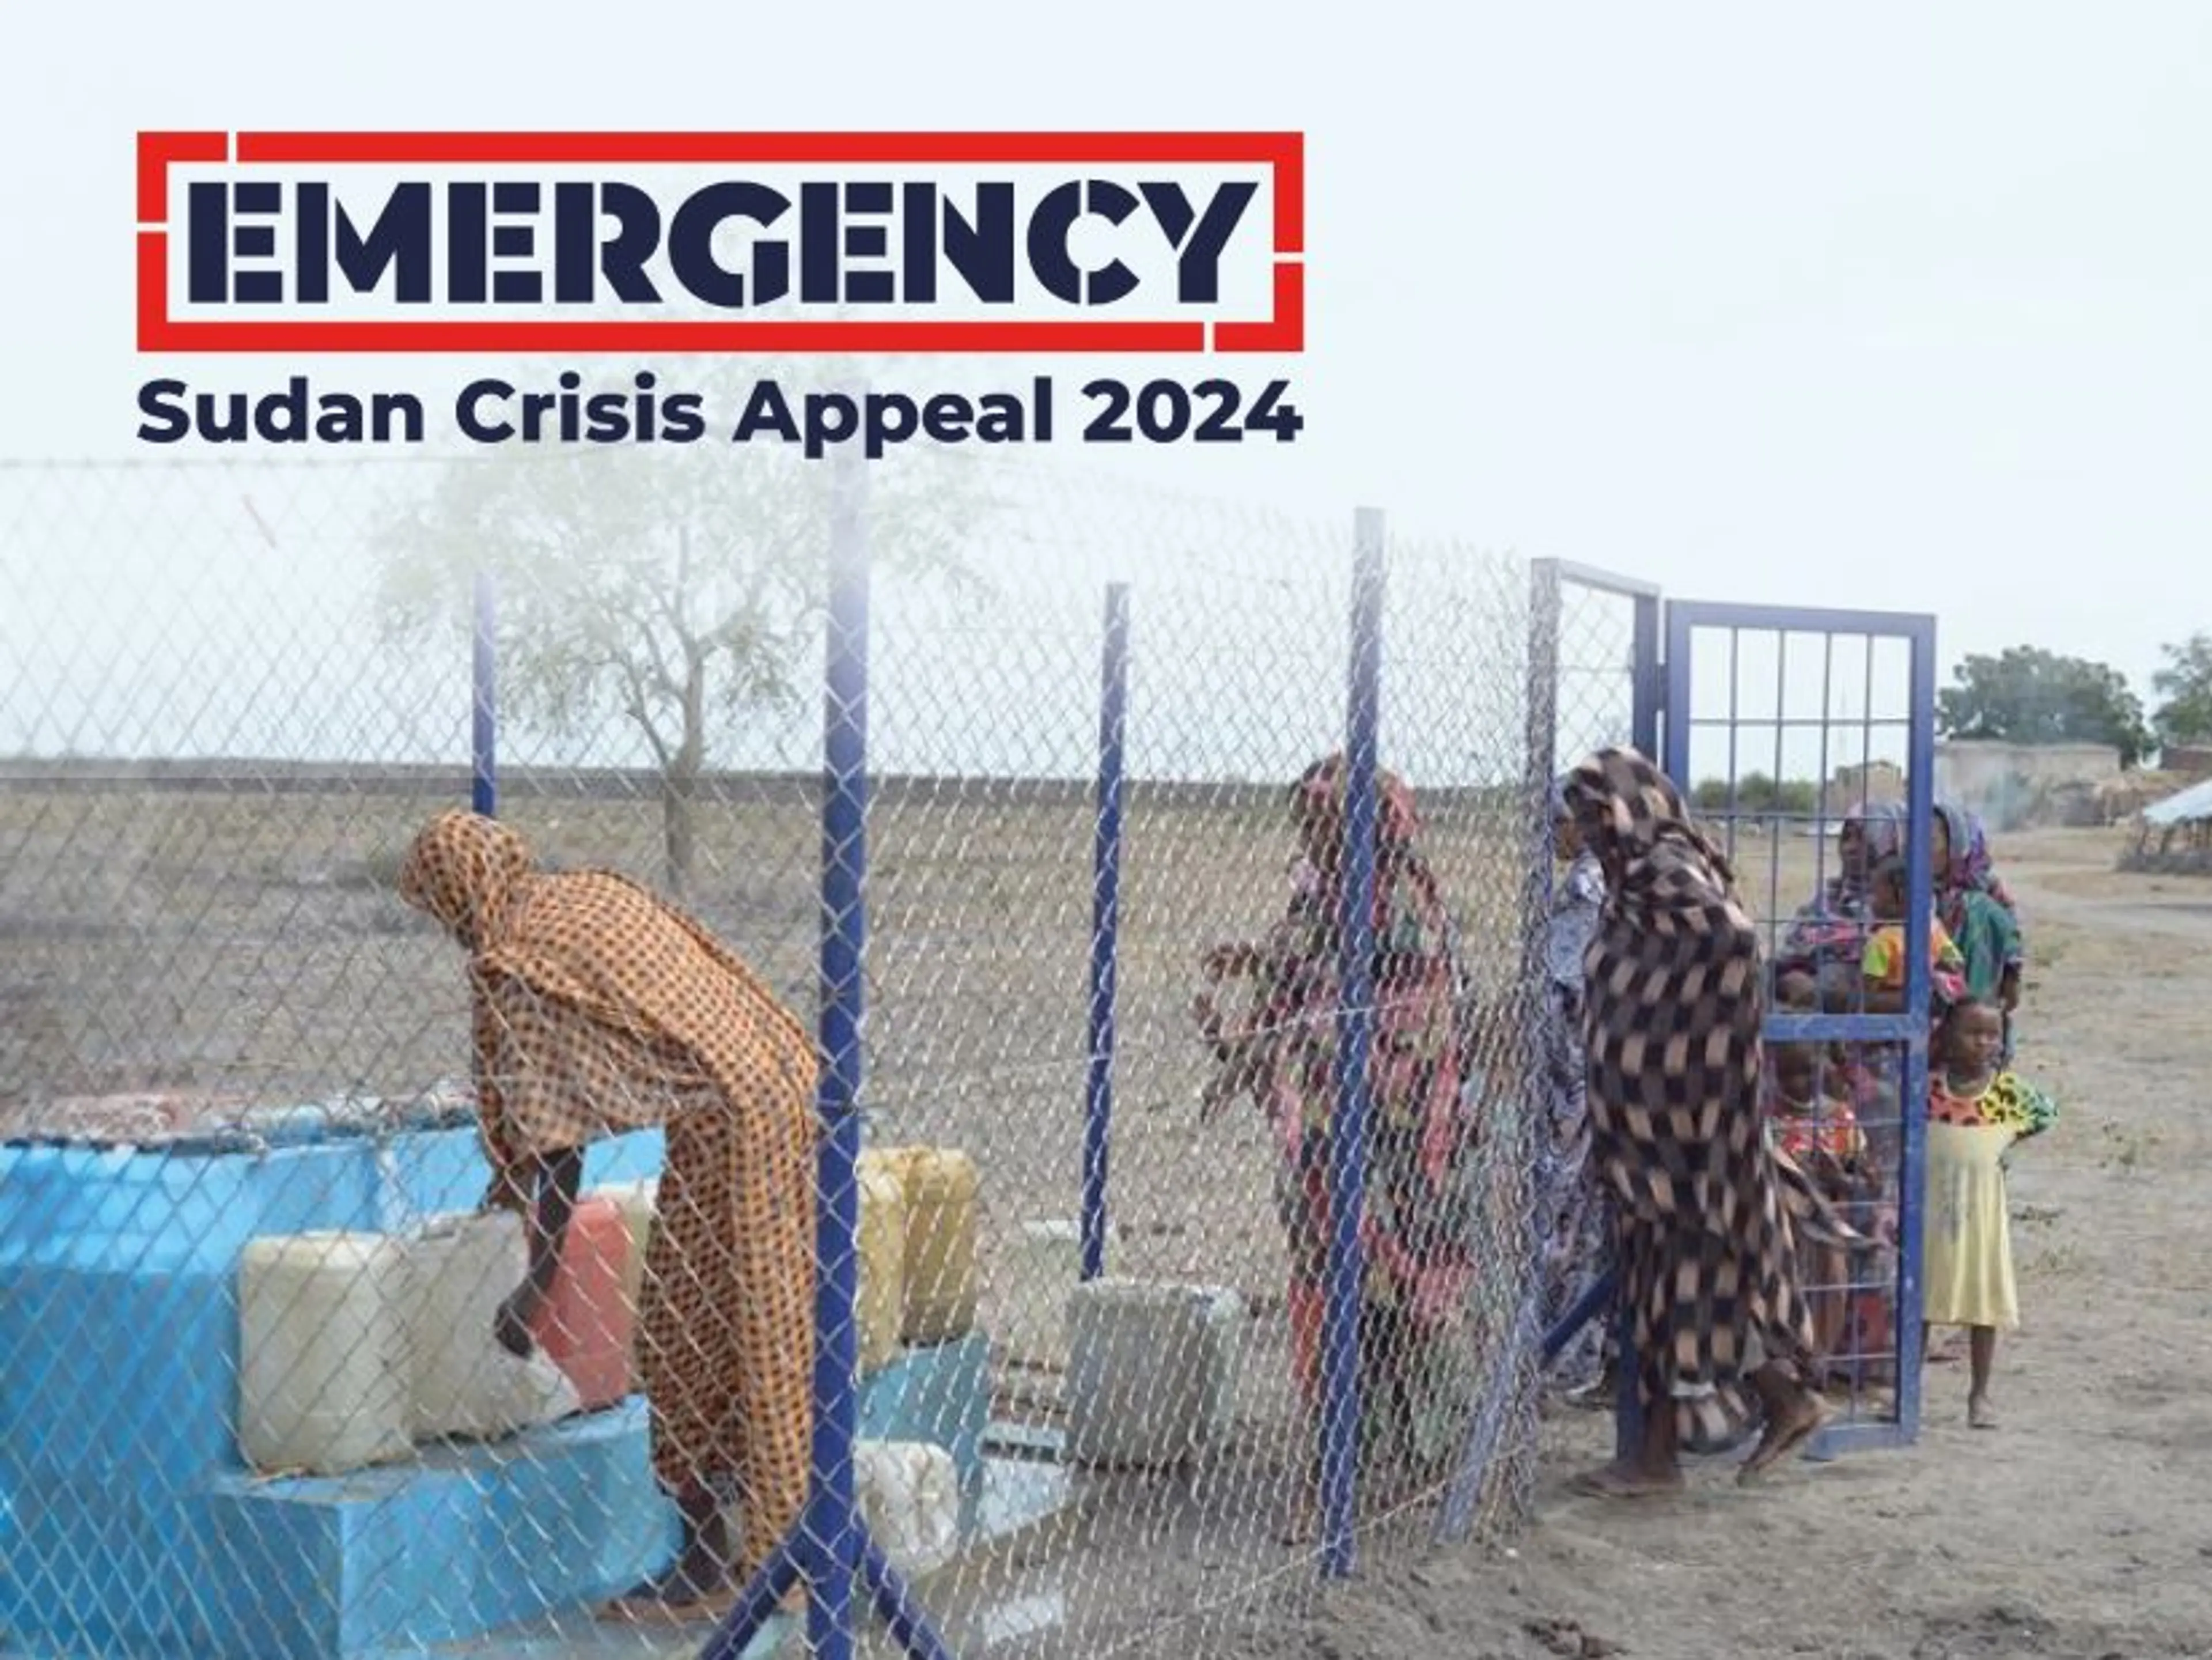 Sudan Crisis Appeal 2024